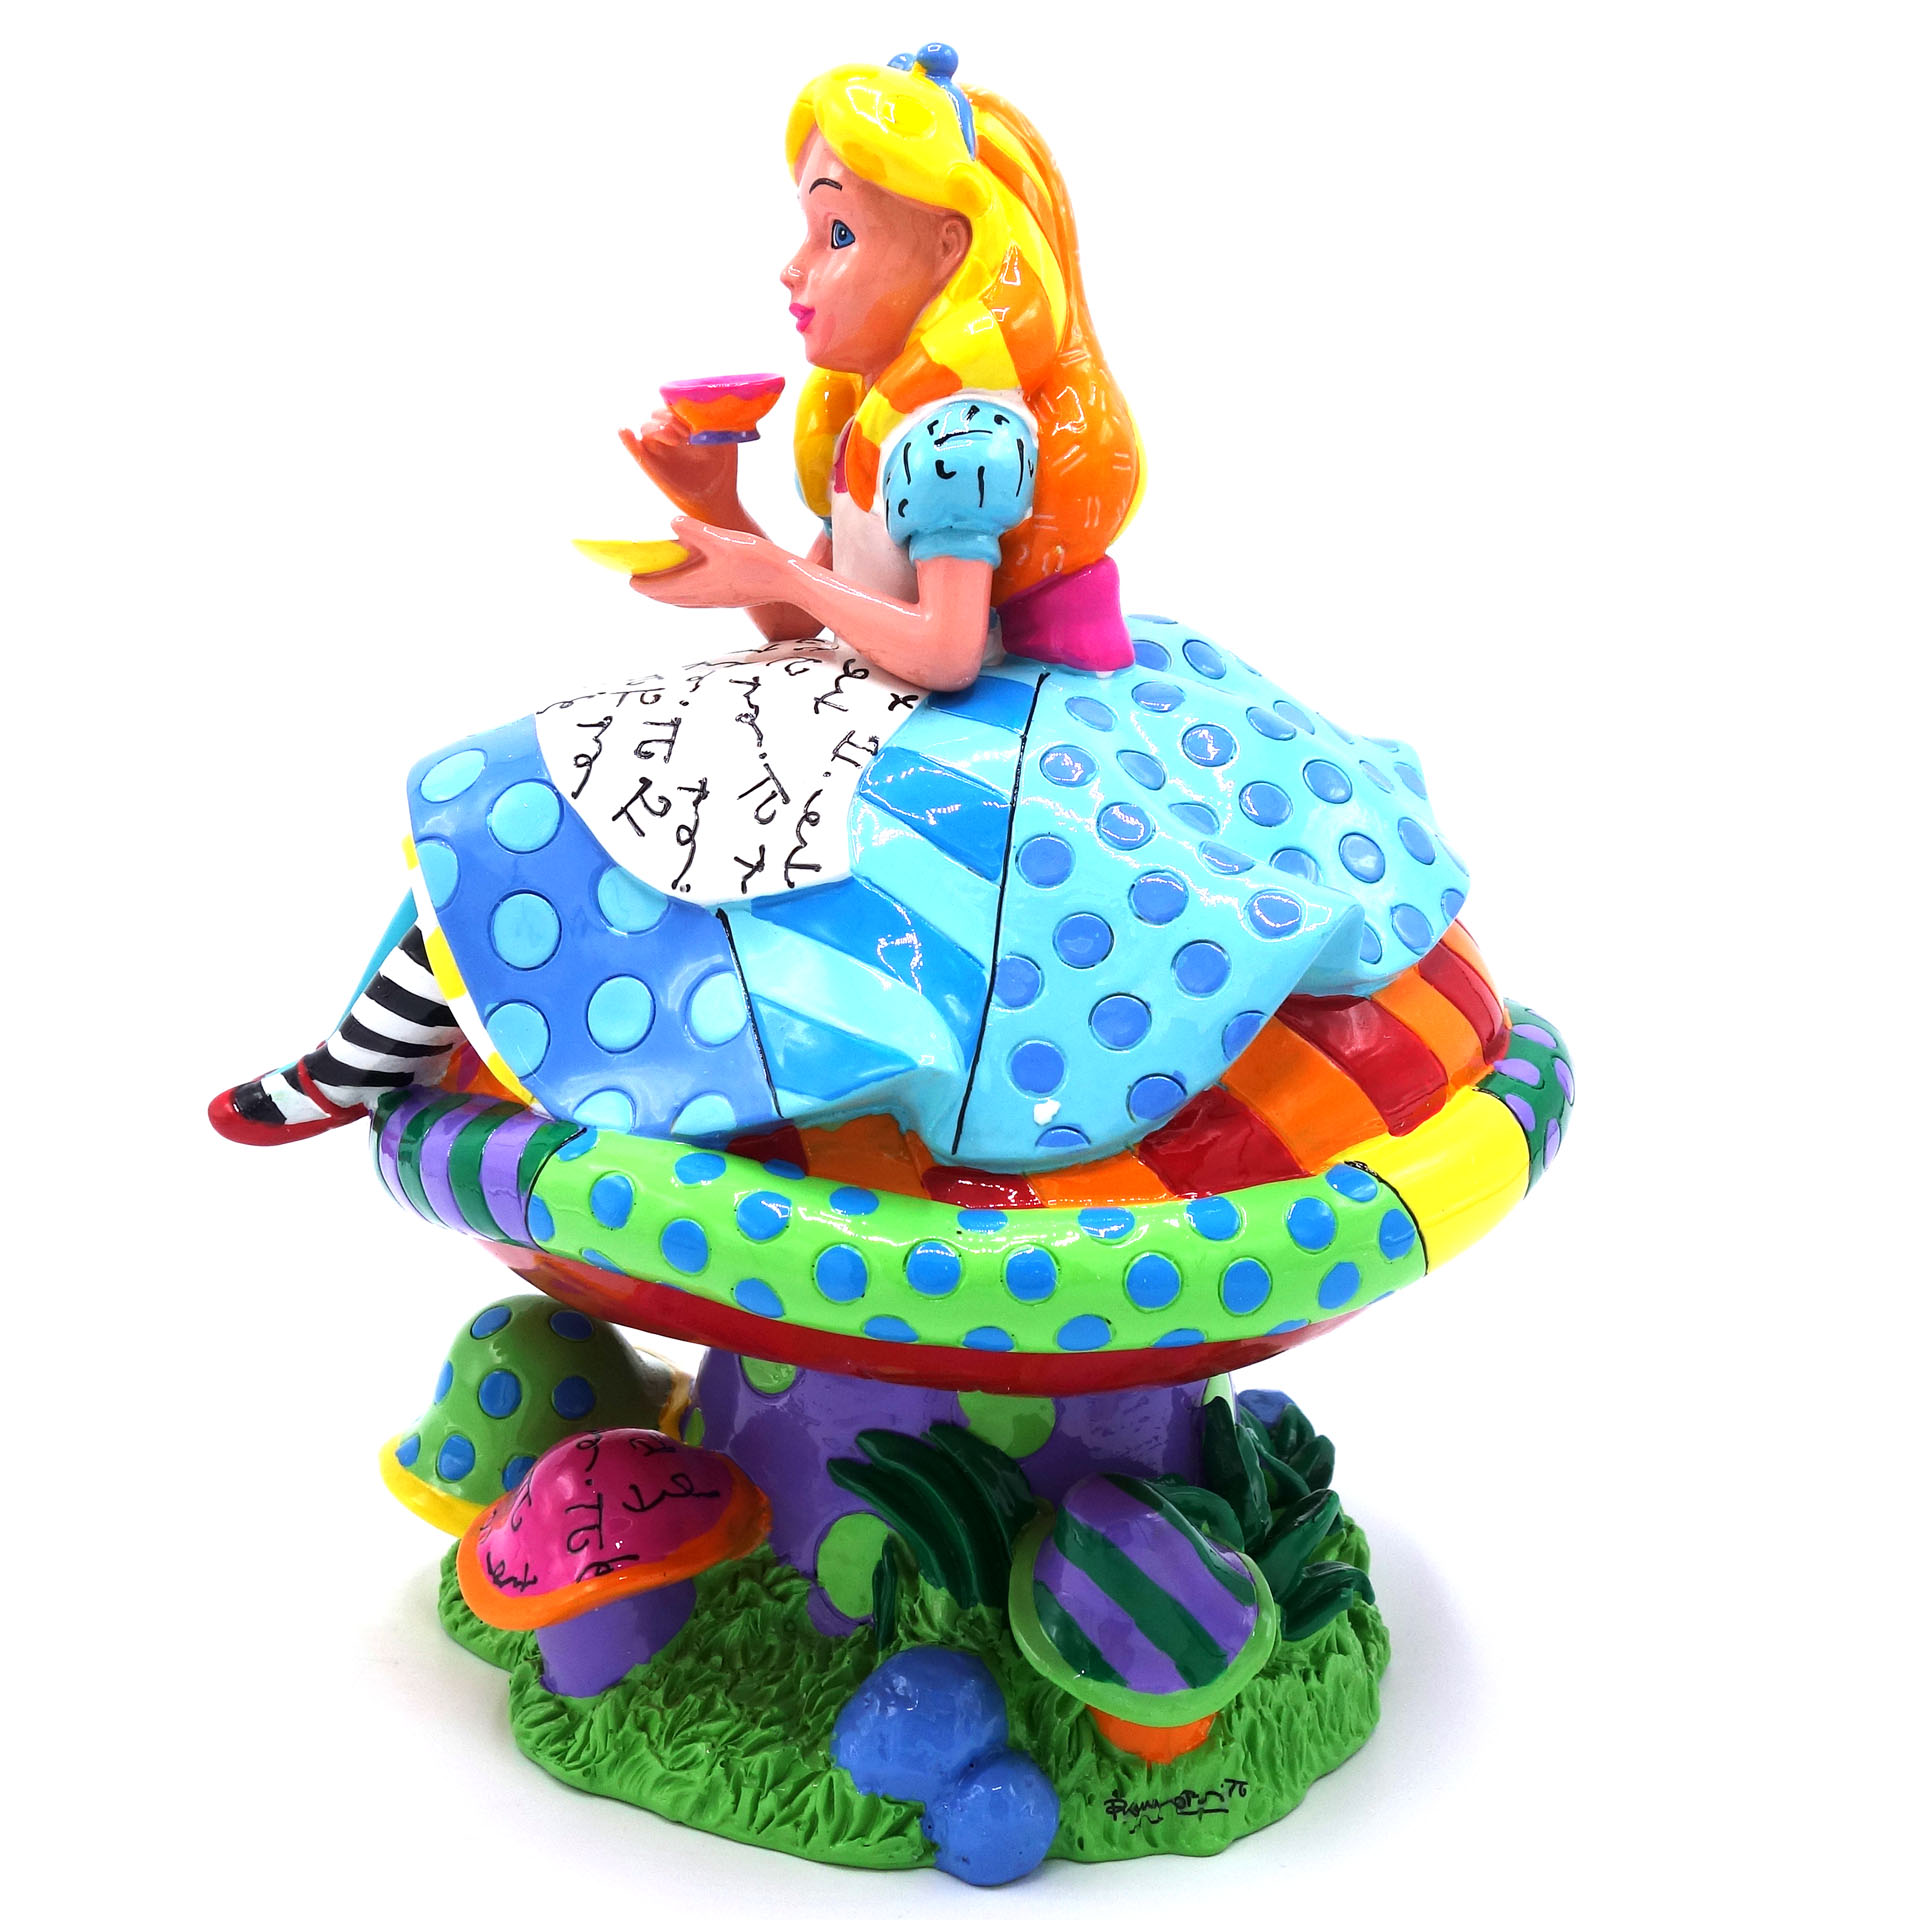 Sammelfigur Disney Alice im Wunderland Alice in Wonderland 4049693